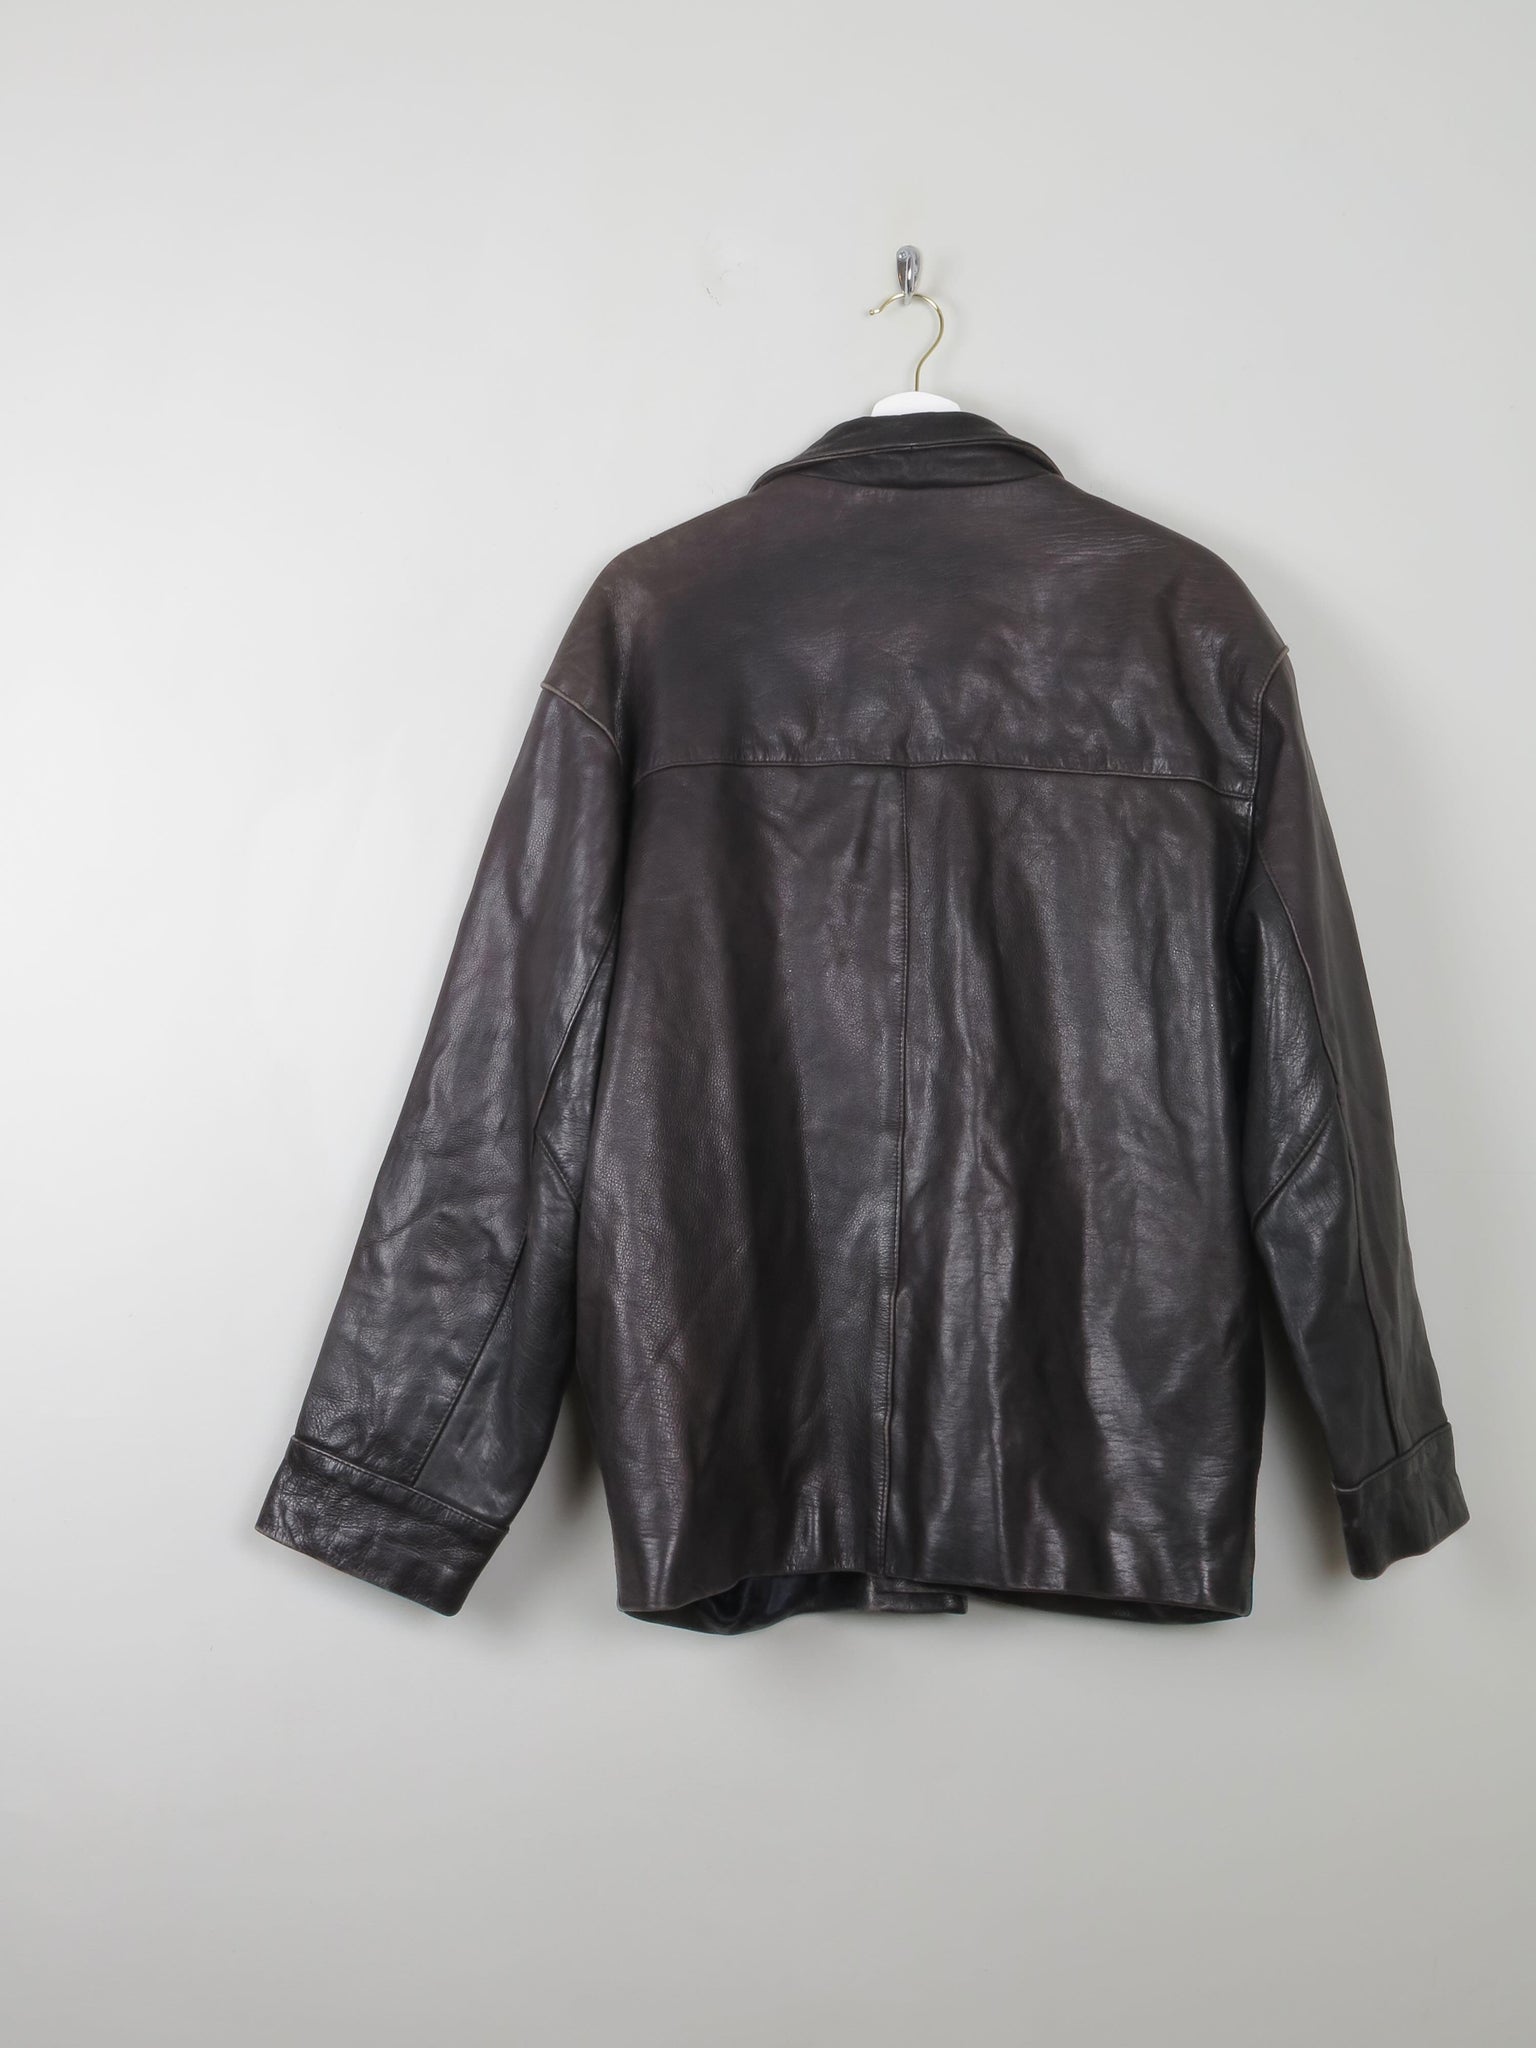 Men's Vintage Black Leather Jacket M - The Harlequin